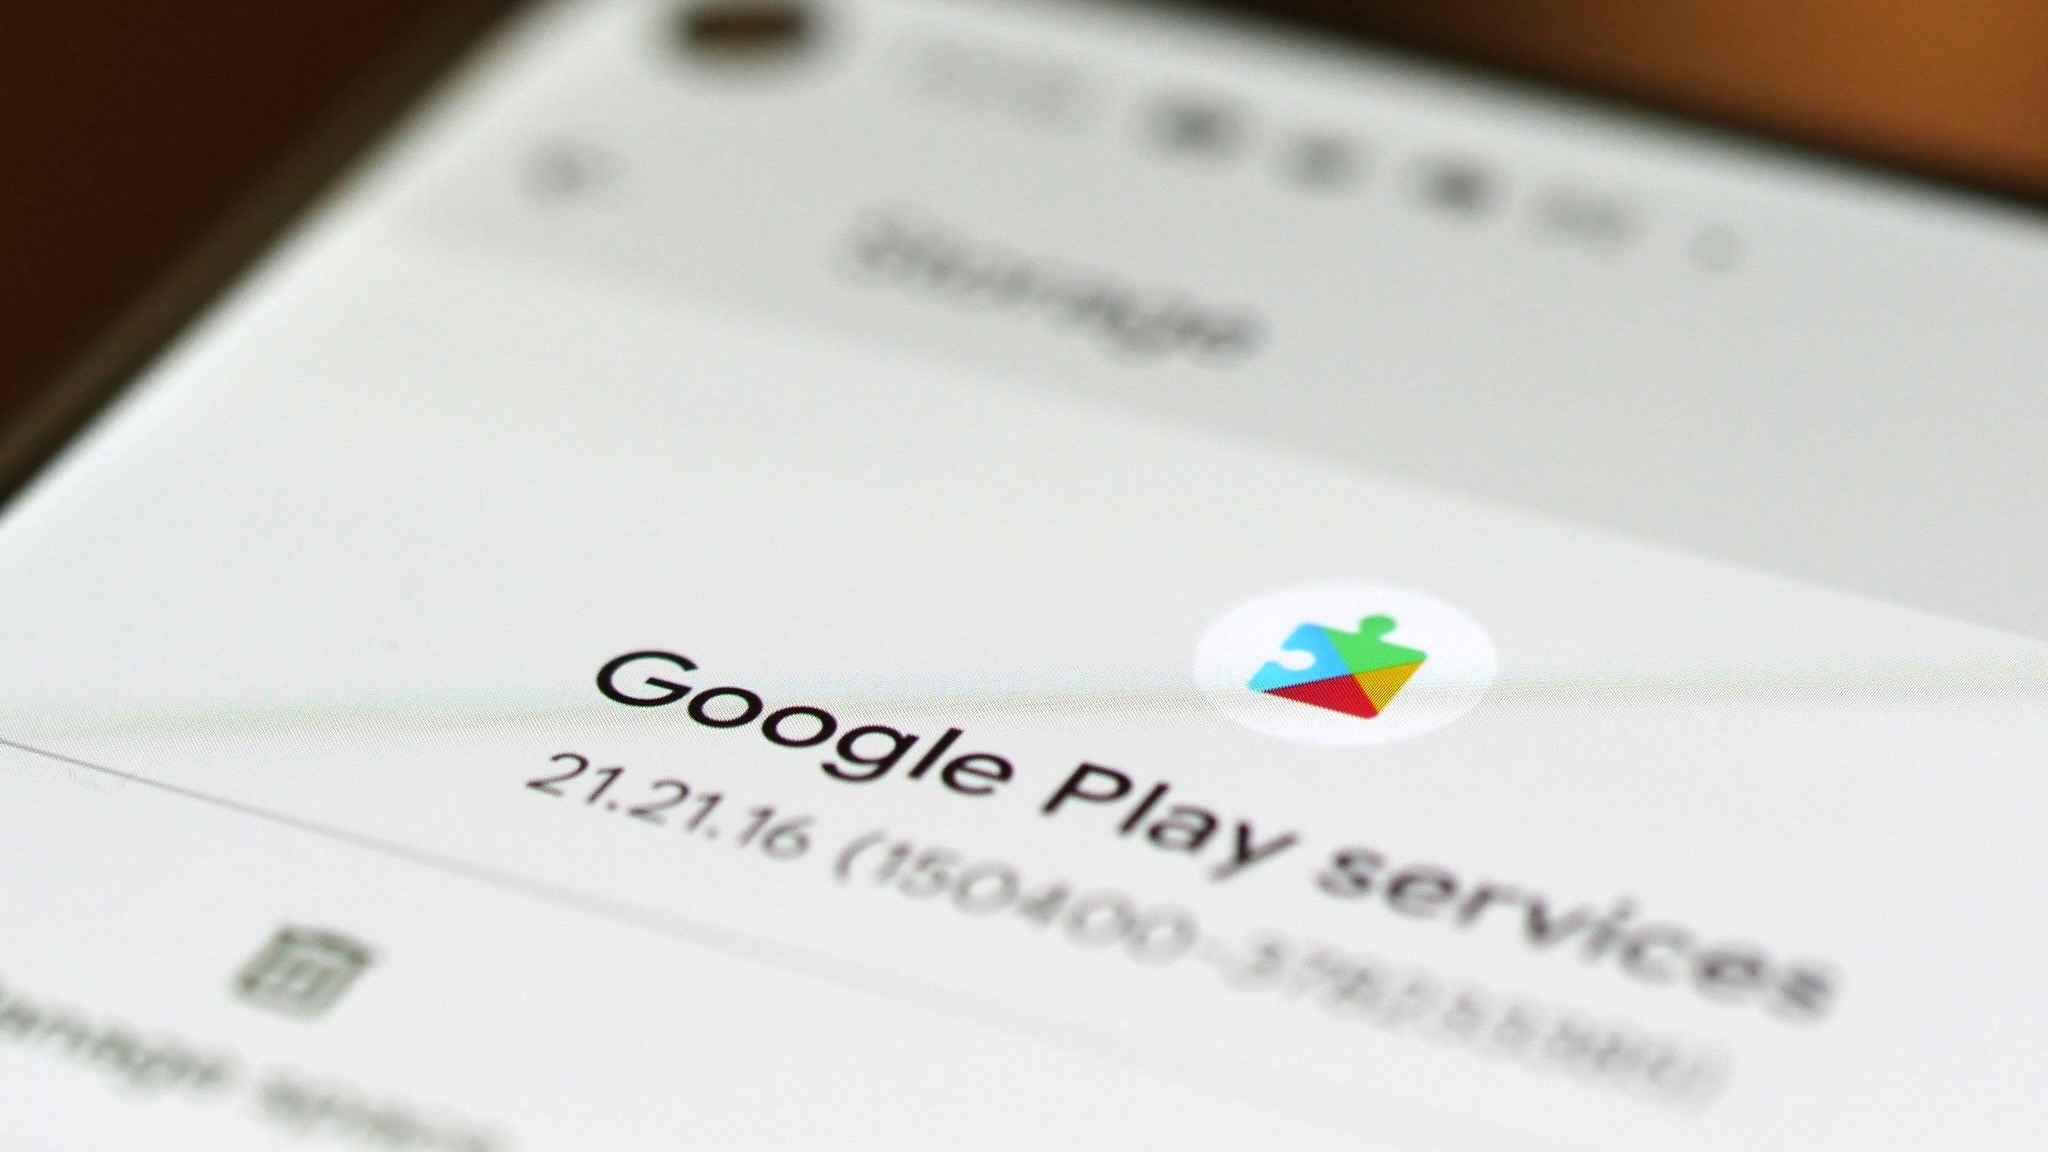 Detalhe das informações do aplicativo Google Play Services